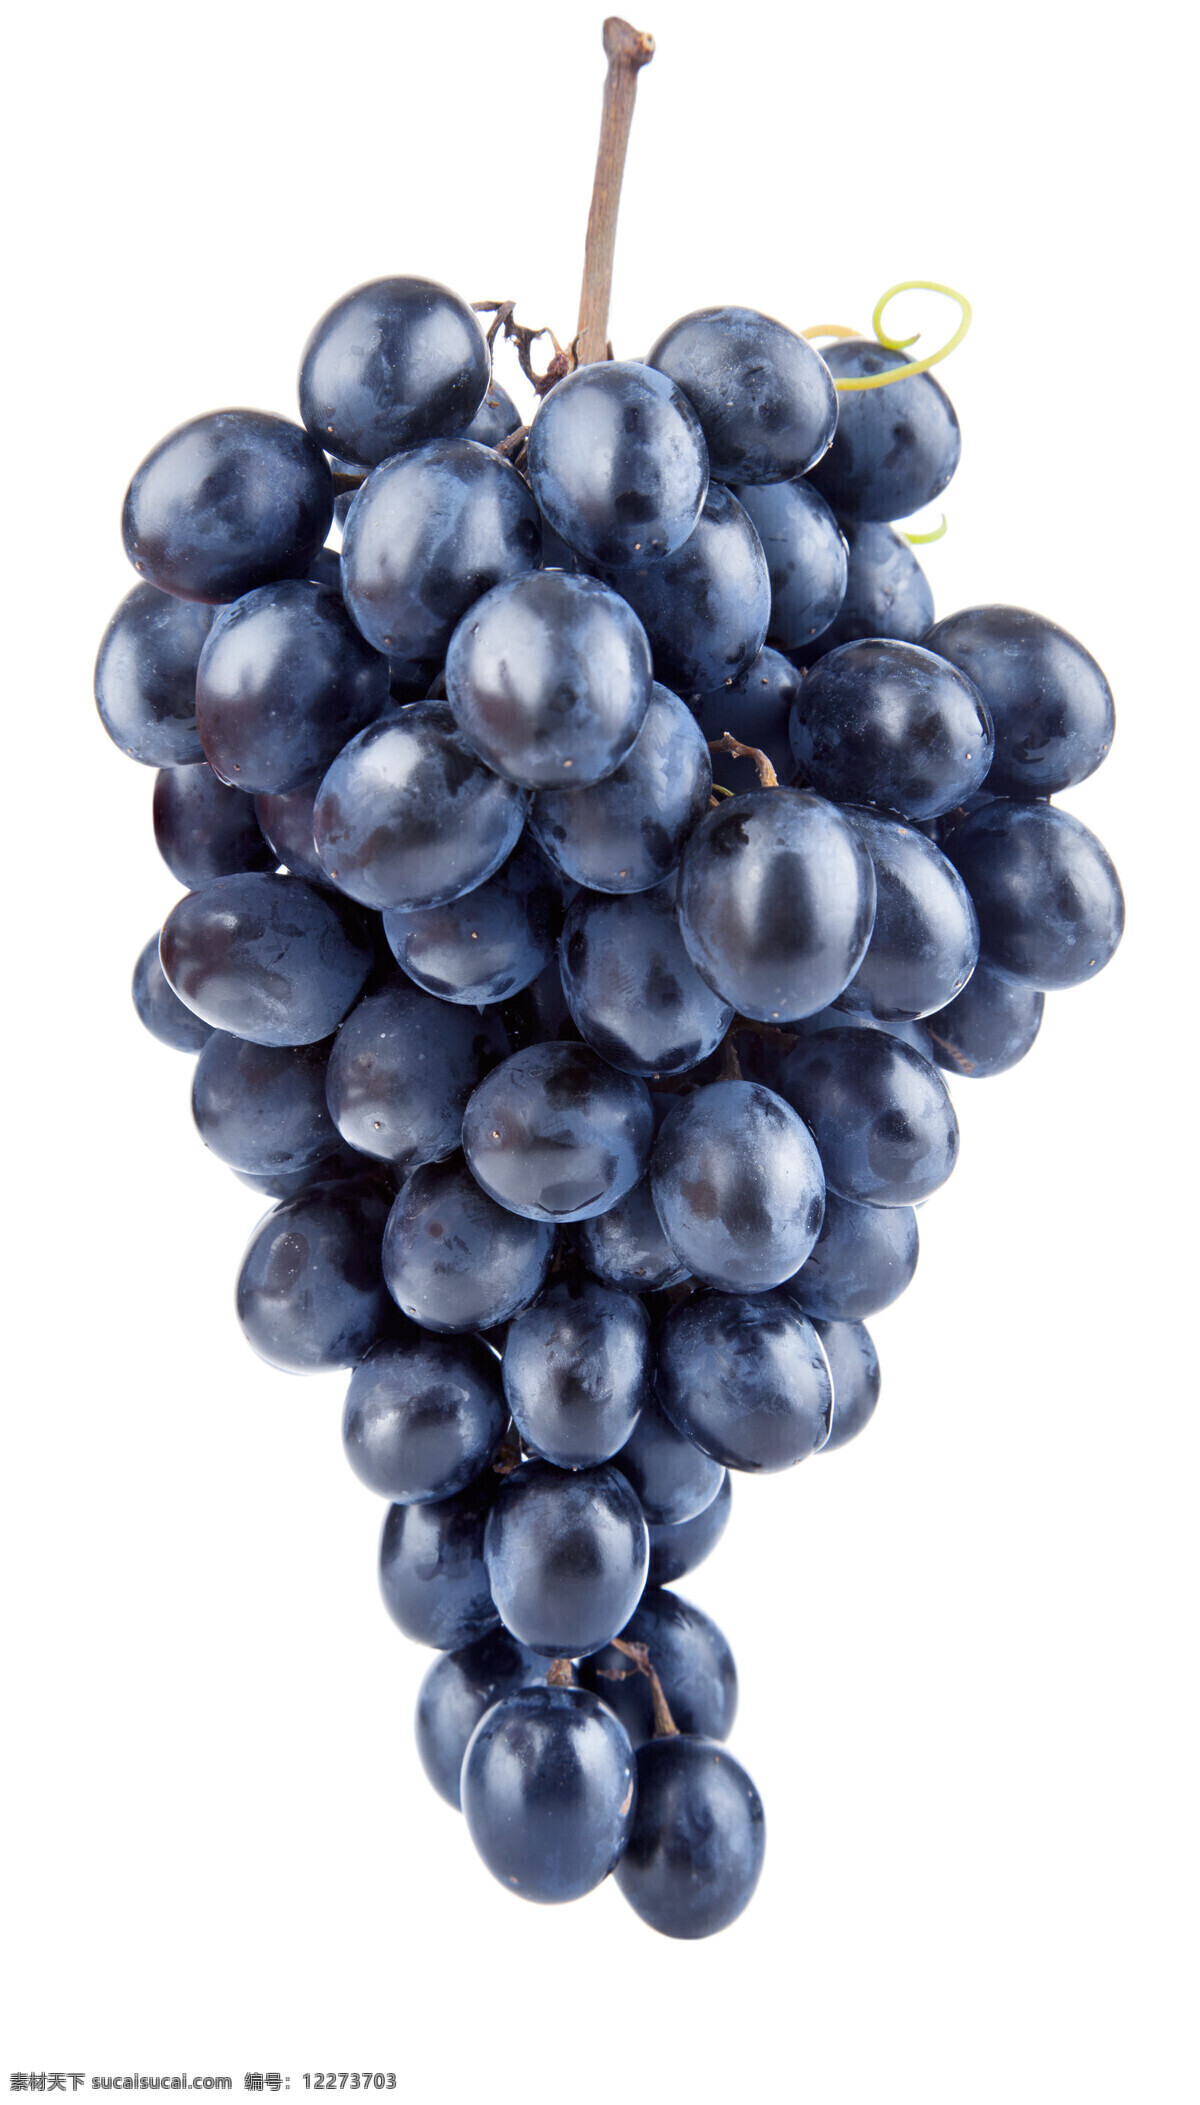 紫葡萄摄影 葡萄 葡萄摄影 紫葡萄 水果 水果摄影 水果素材 水果蔬菜 餐饮美食 白色